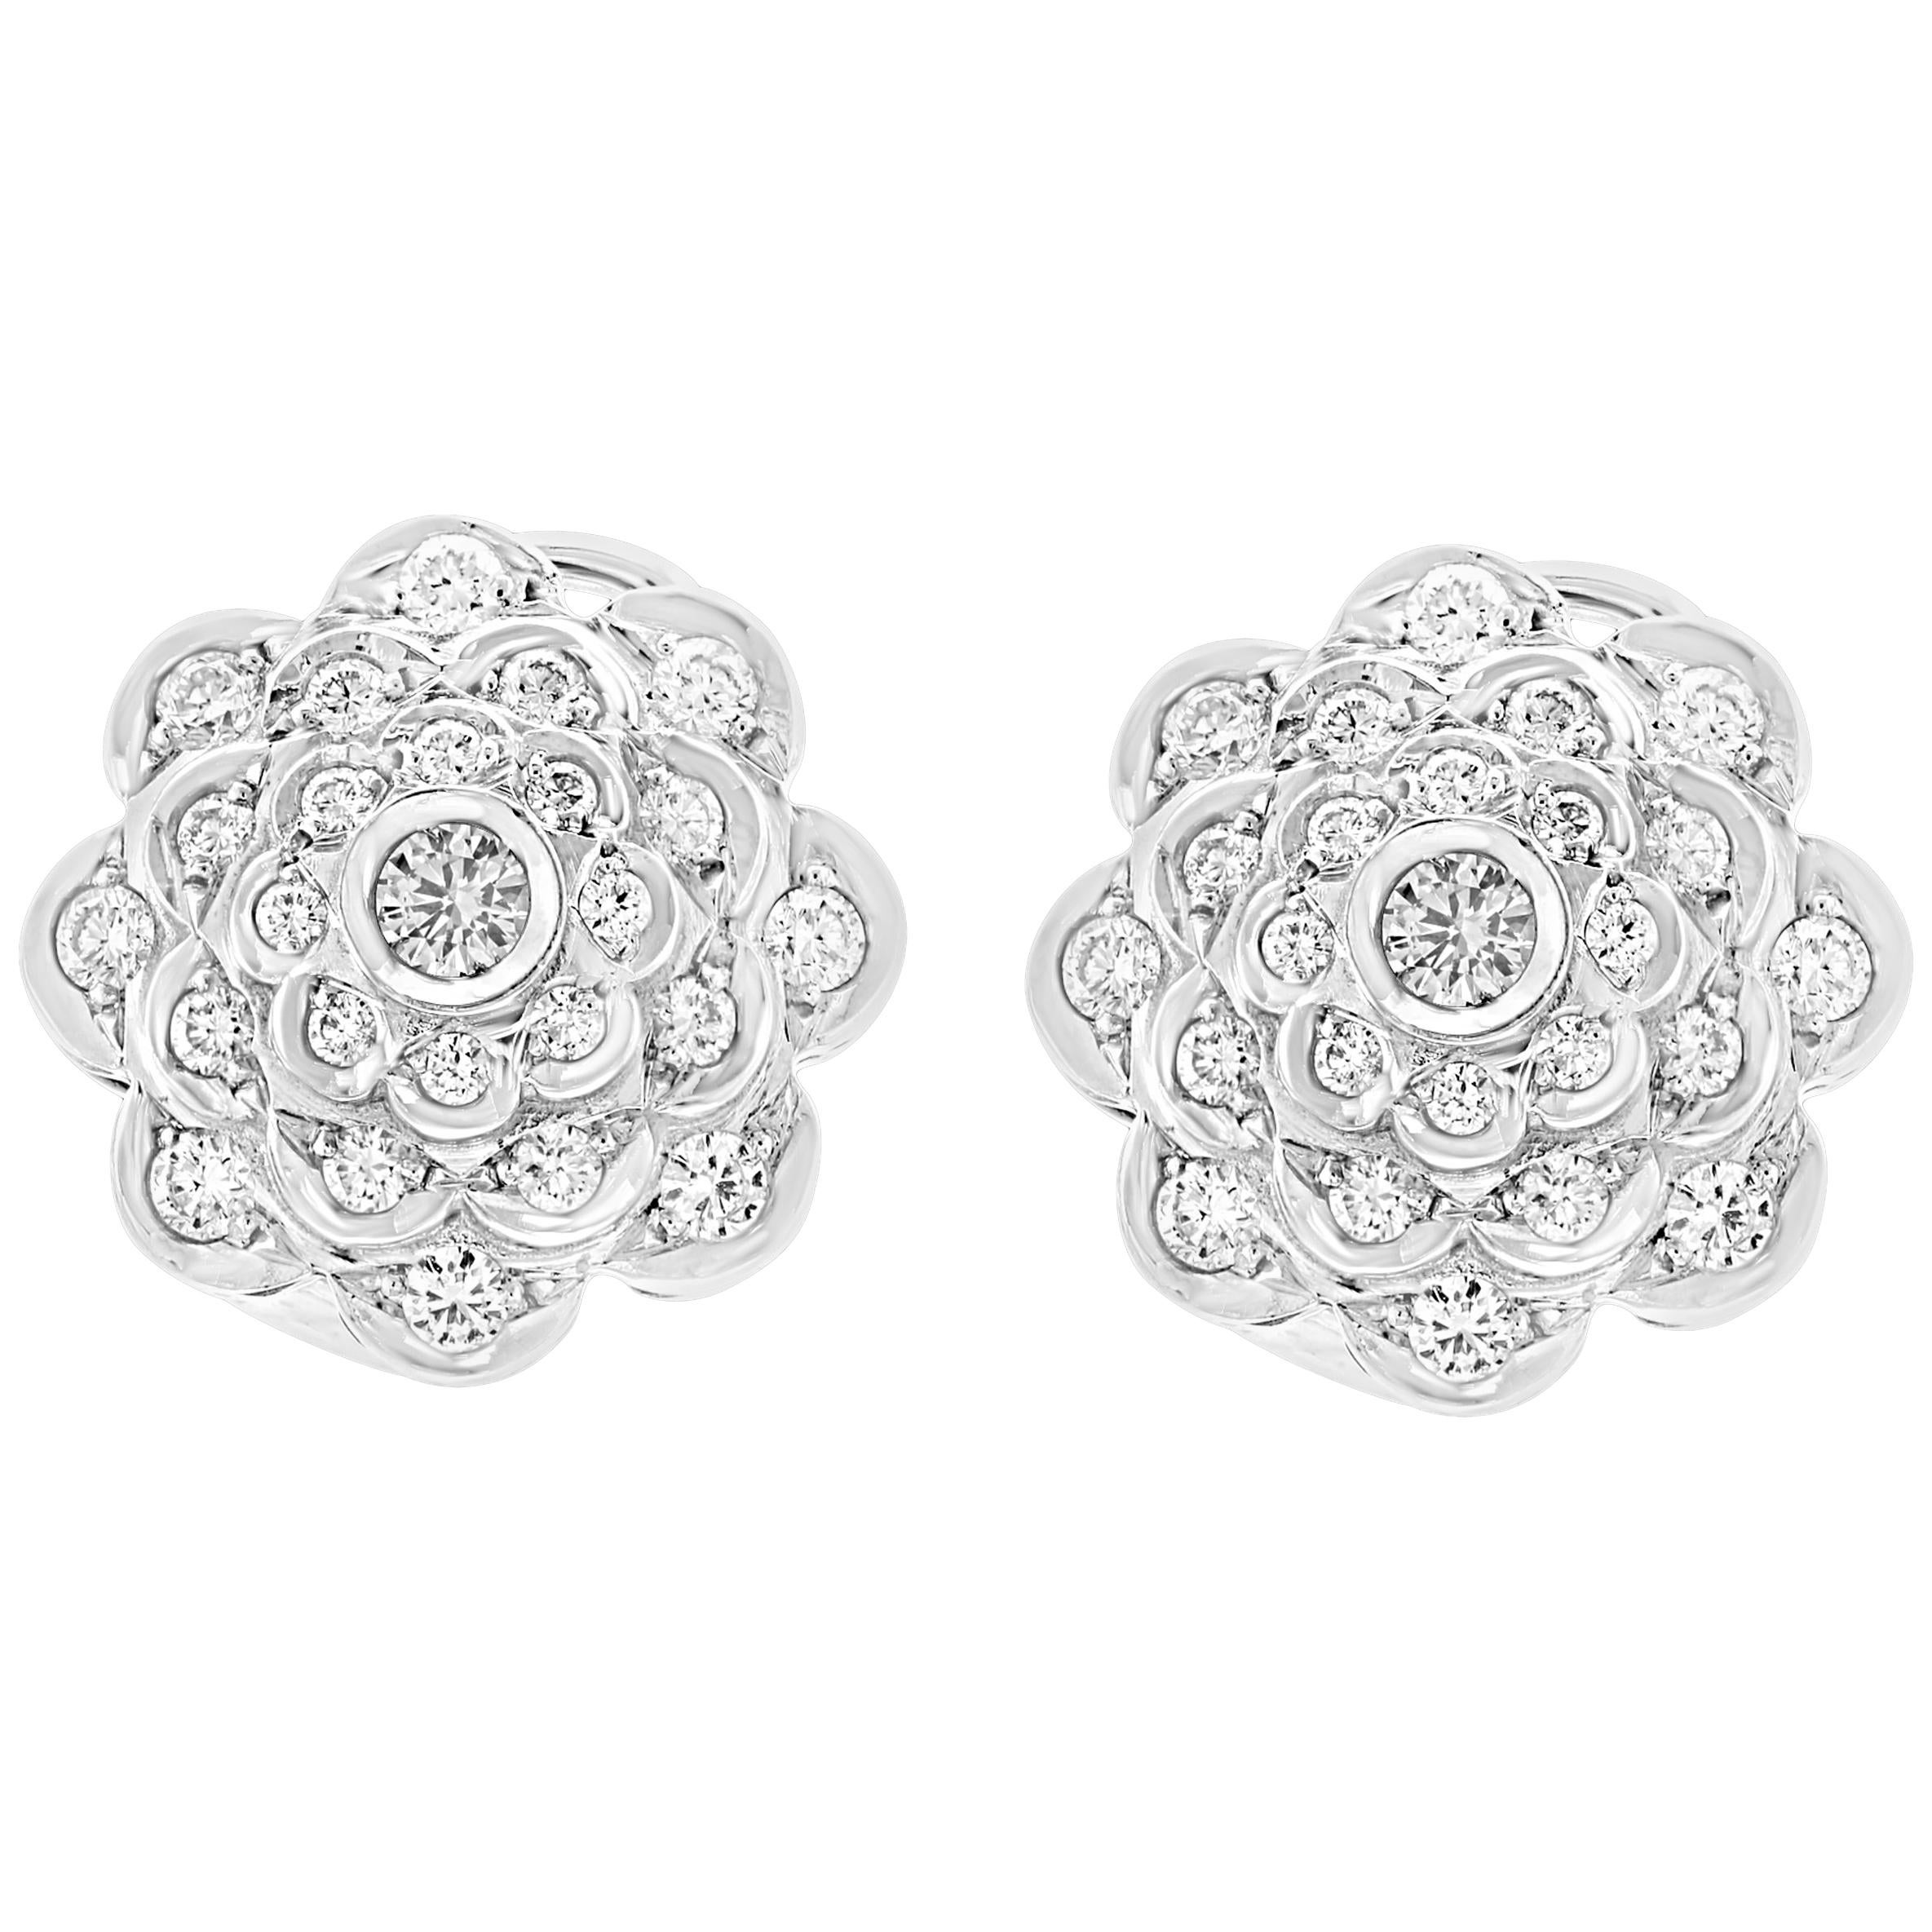 2.8 Carat Diamond VS Quality Flower/Cluster Earring 18 Karat White Gold